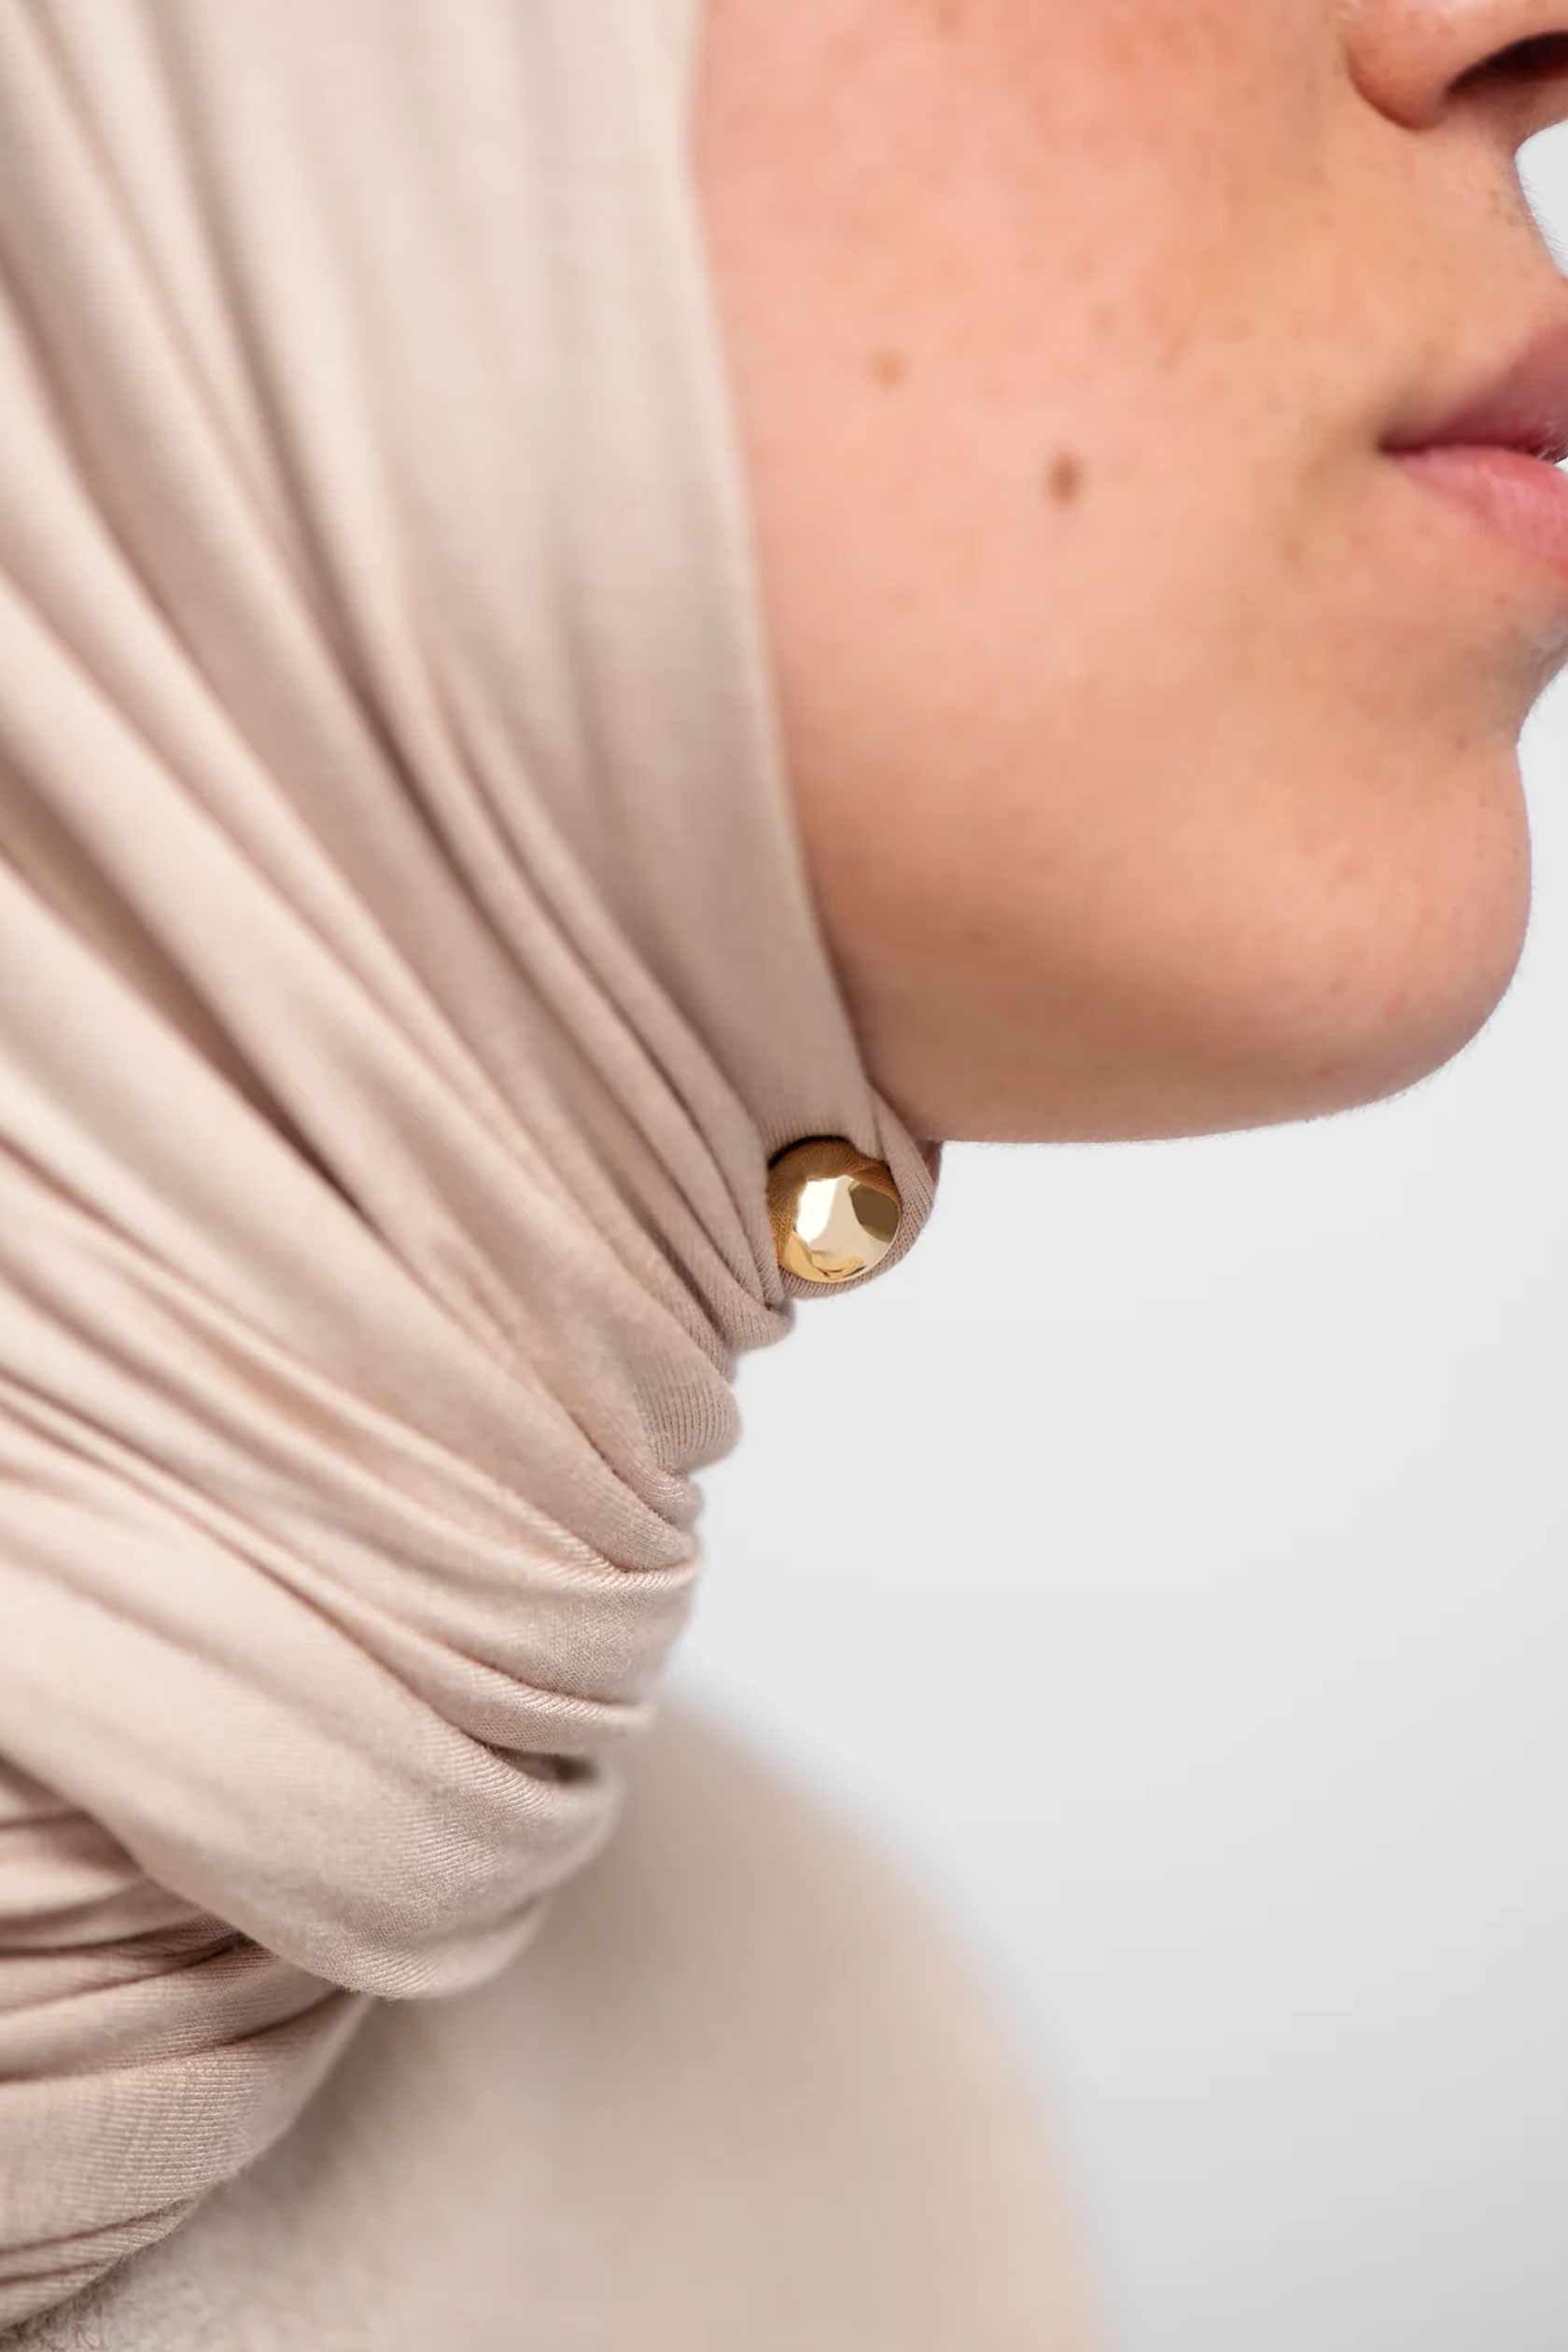 Model No-snag Hijab Magnets 4 Colors